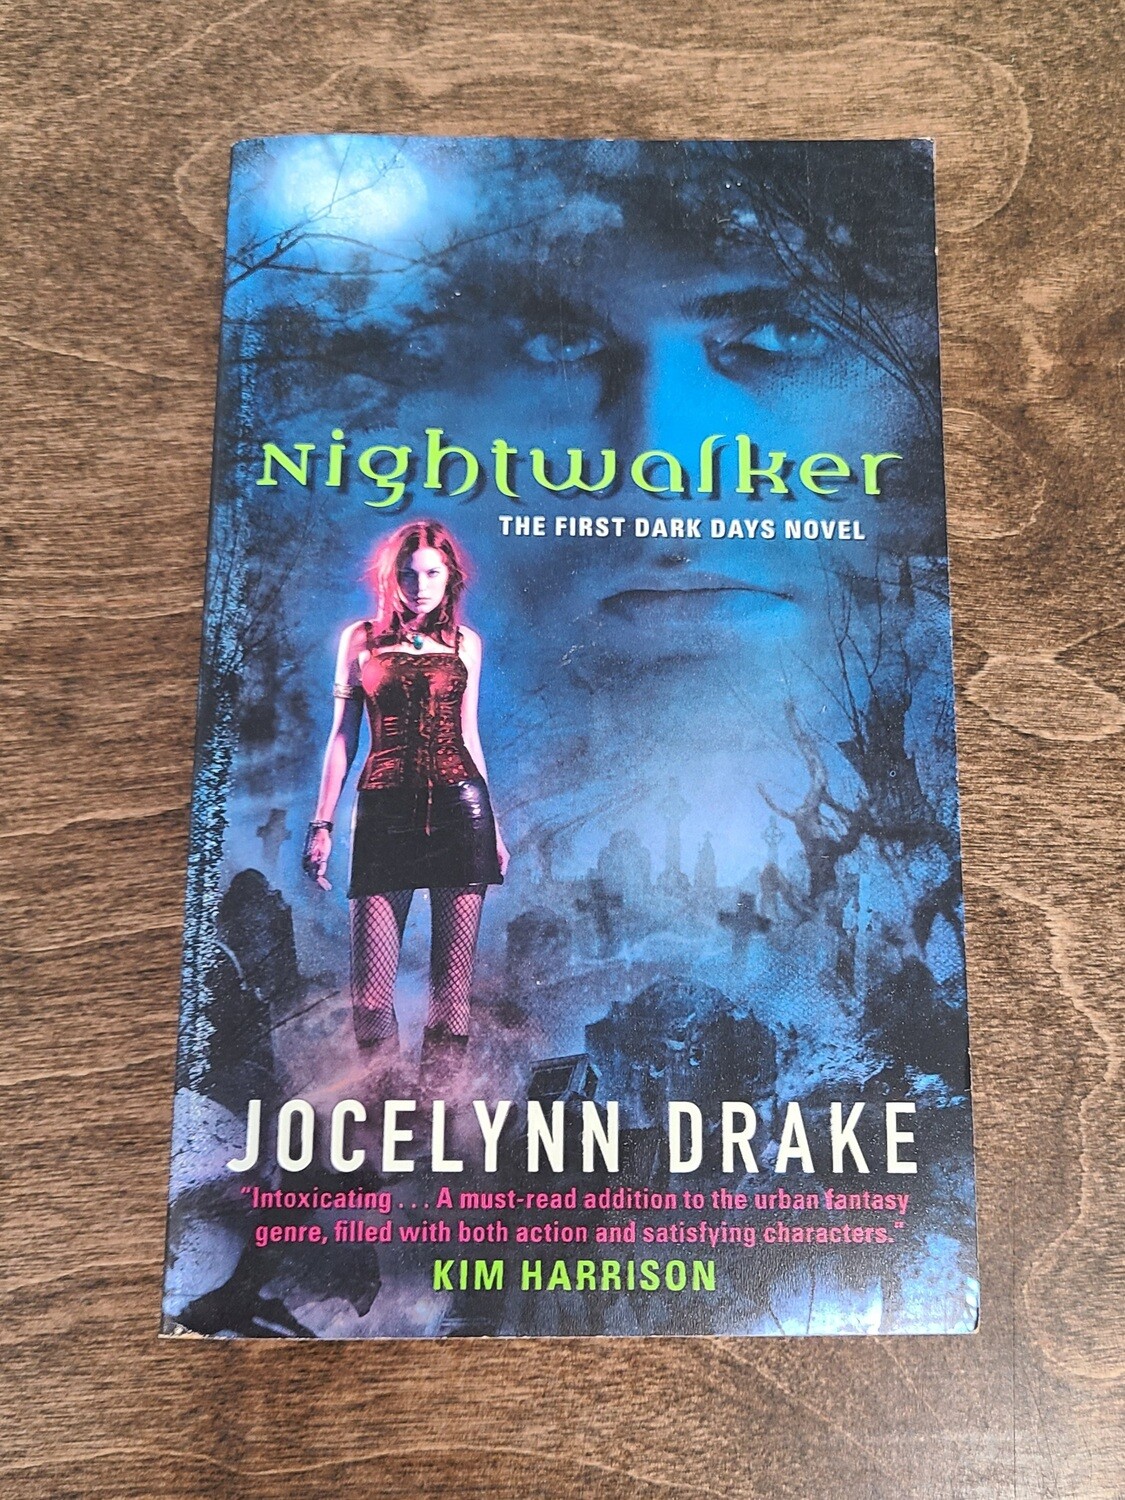 Nightwalker by Jocelynn Drake